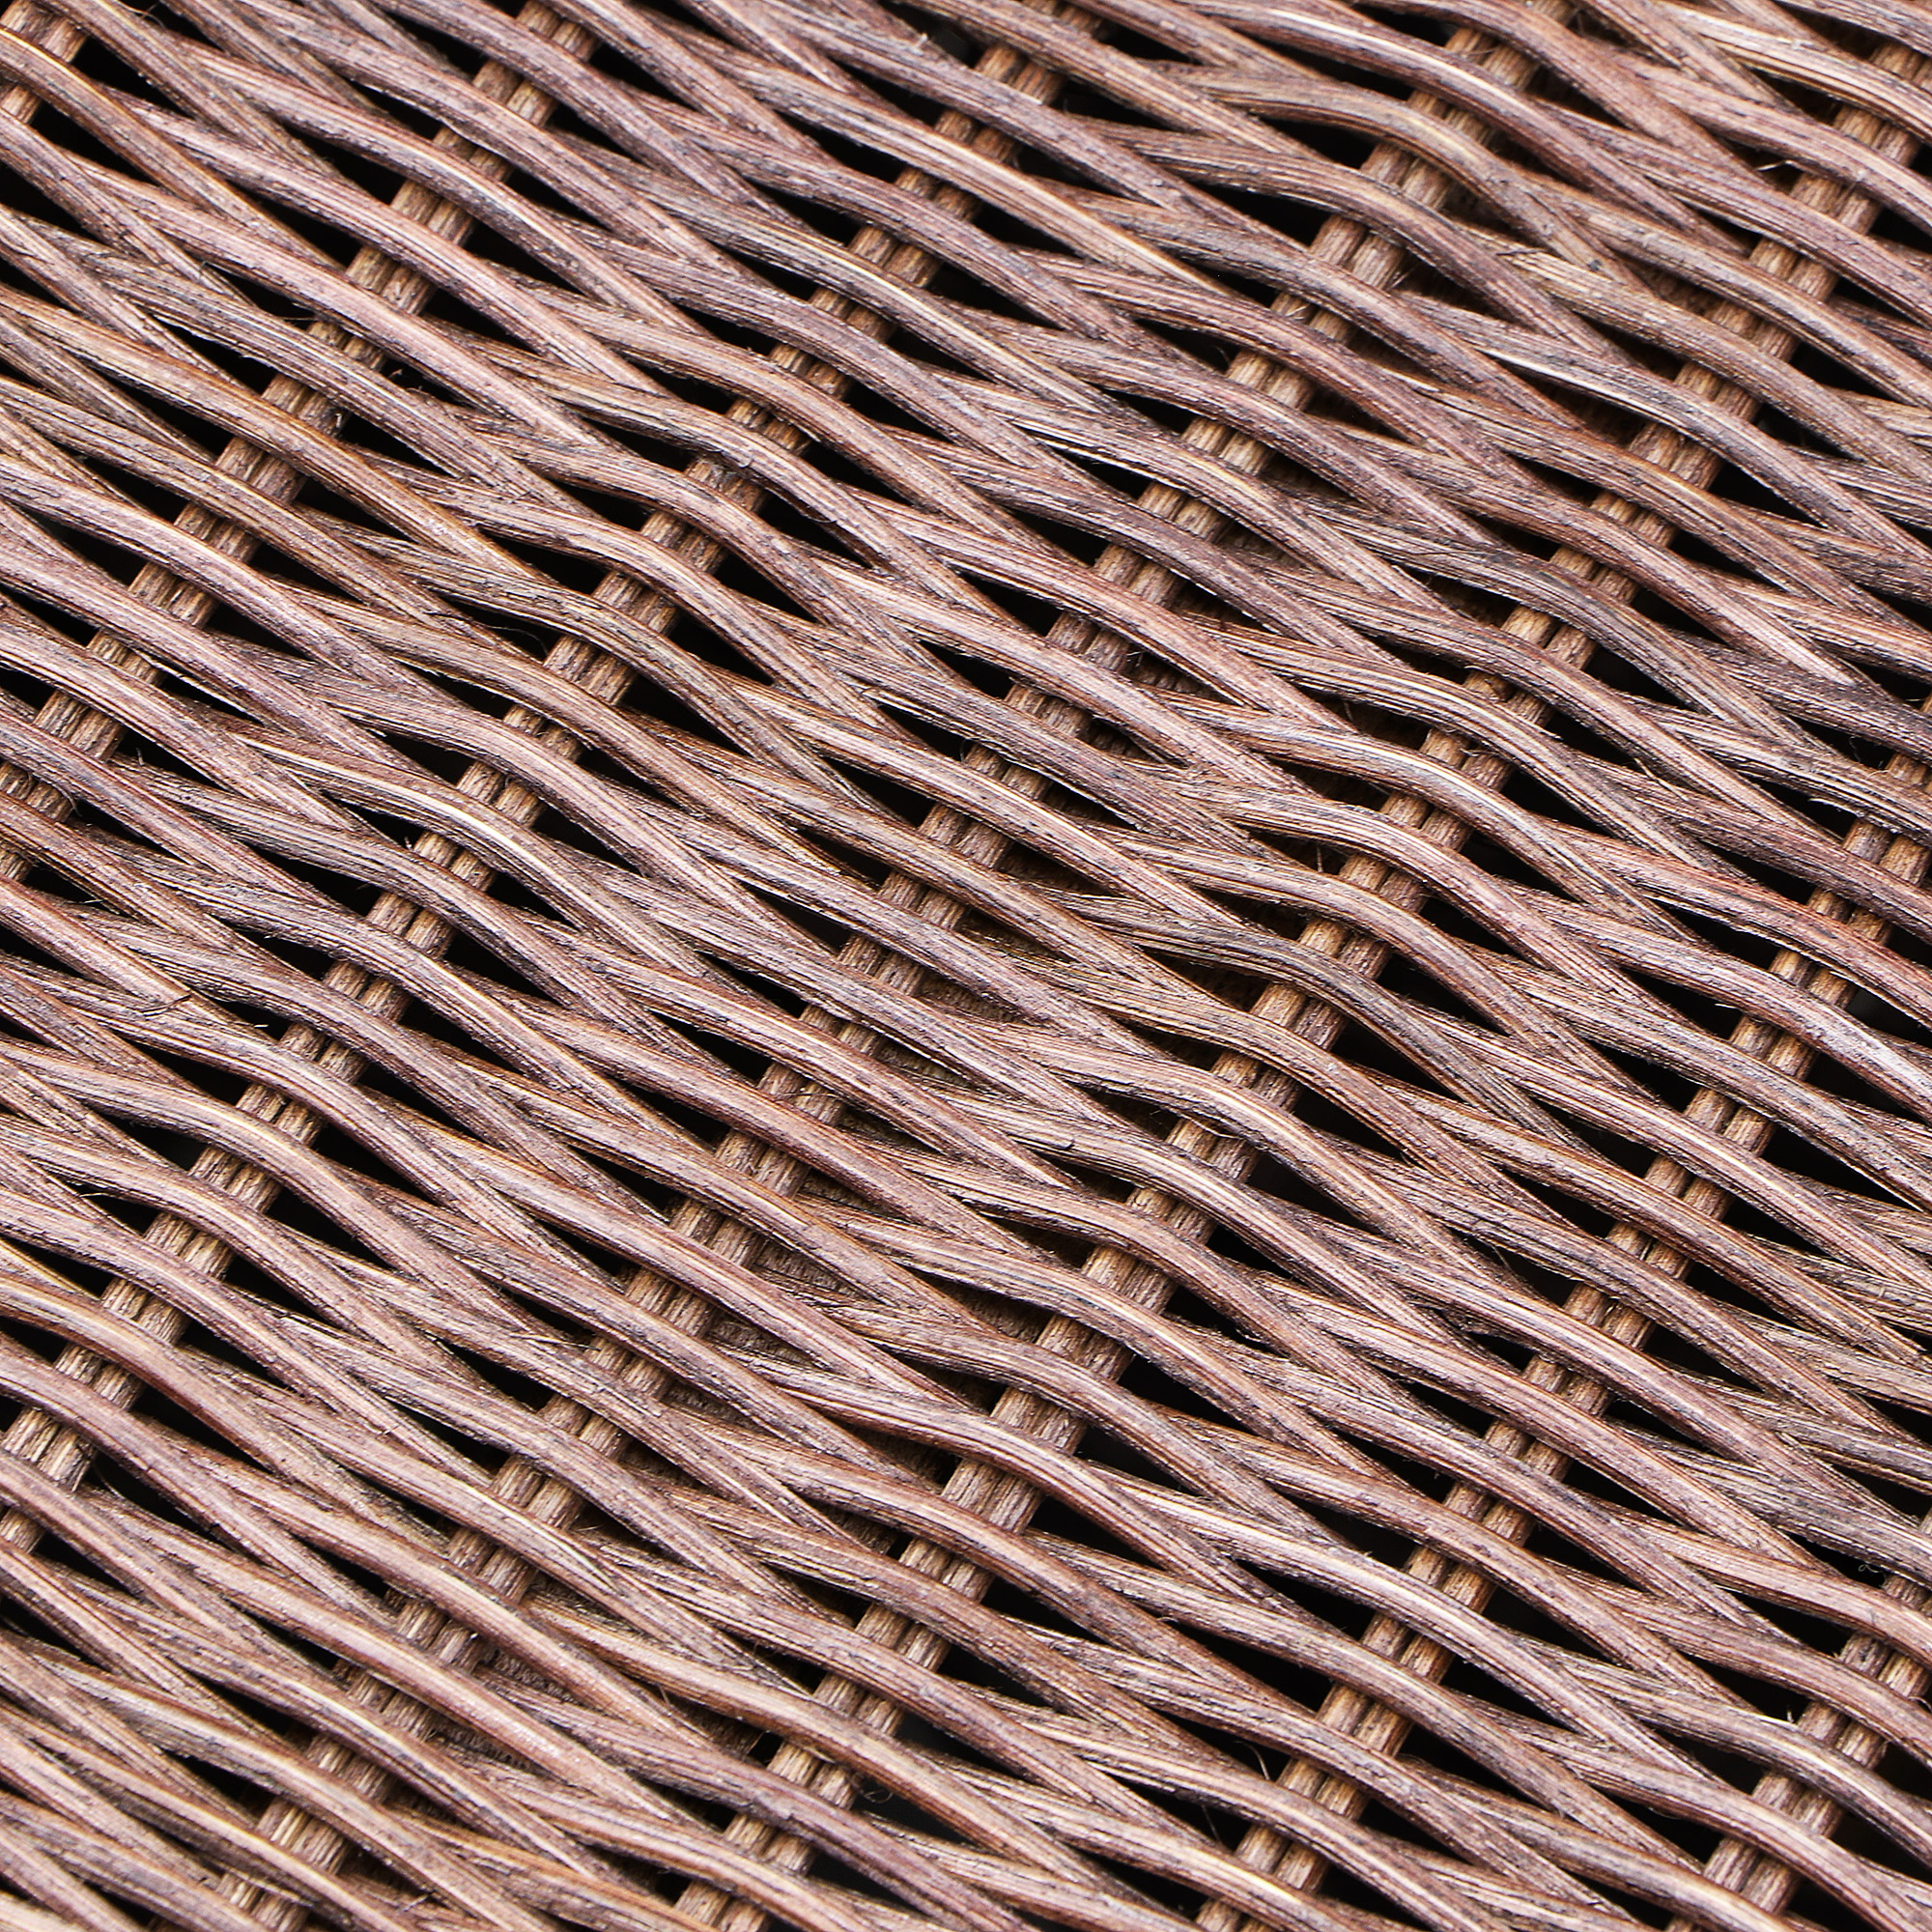 Ящик Rattan grand sidney medium brown, цвет коричневый - фото 4